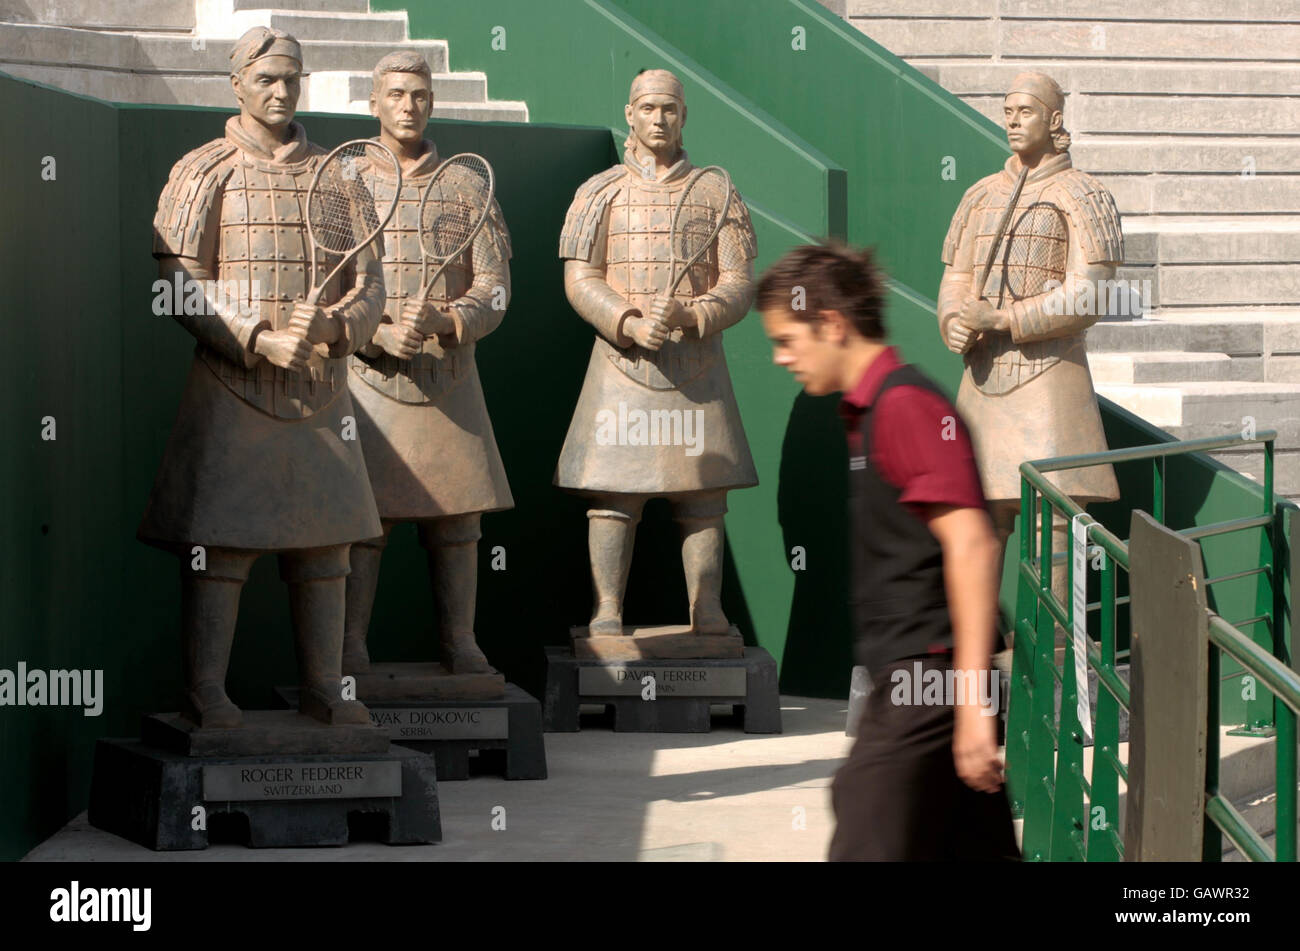 Un homme passe devant les statues de Roger Federer, Novak Djokovic, David Ferrer et Fernando Gonzalez sur le nouveau court 2, qui ouvrira l'année prochaine, lors des championnats de Wimbledon 2008 au All England tennis Club de Wimbledon. Banque D'Images